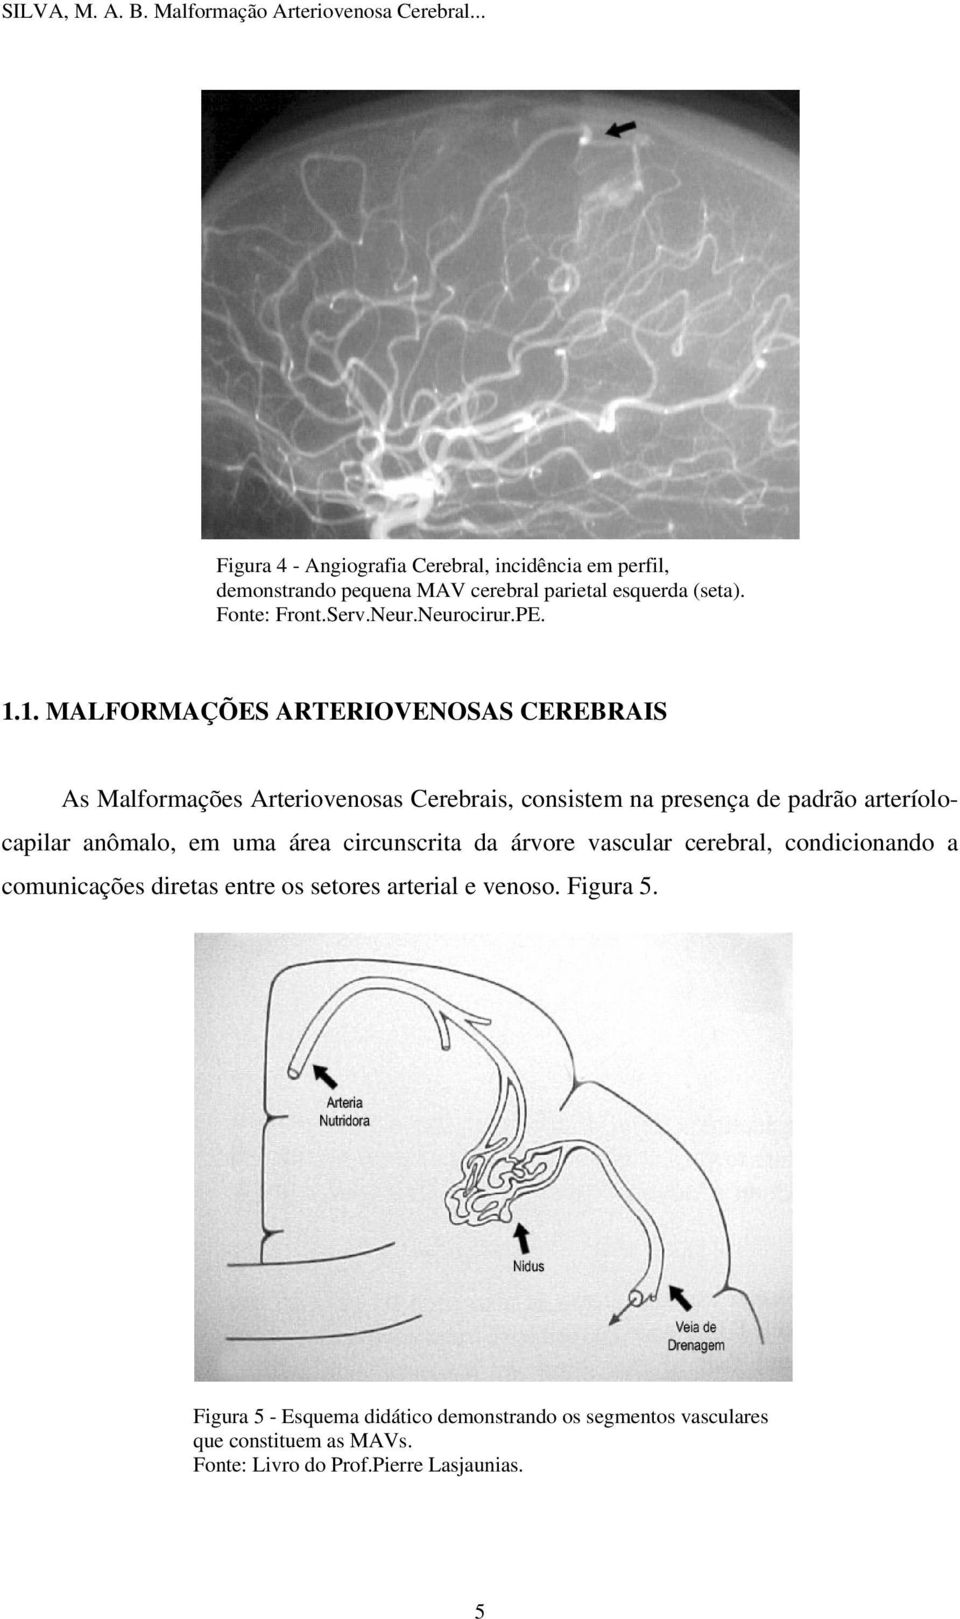 1. MALFORMAÇÕES ARTERIOVENOSAS CEREBRAIS As Malformações Arteriovenosas Cerebrais, consistem na presença de padrão arteríolocapilar anômalo,